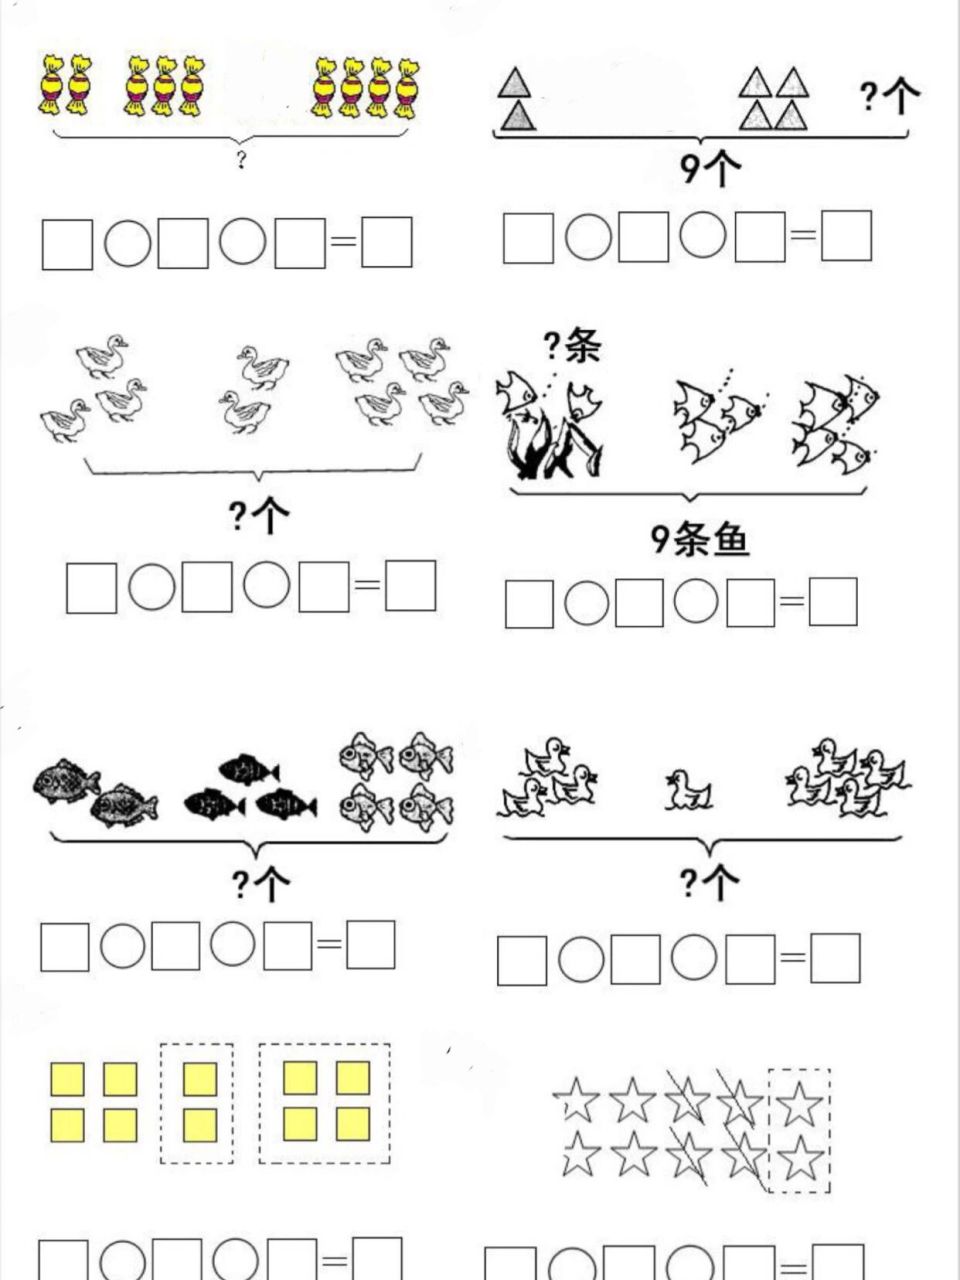 幼儿园连减算式图教案图片